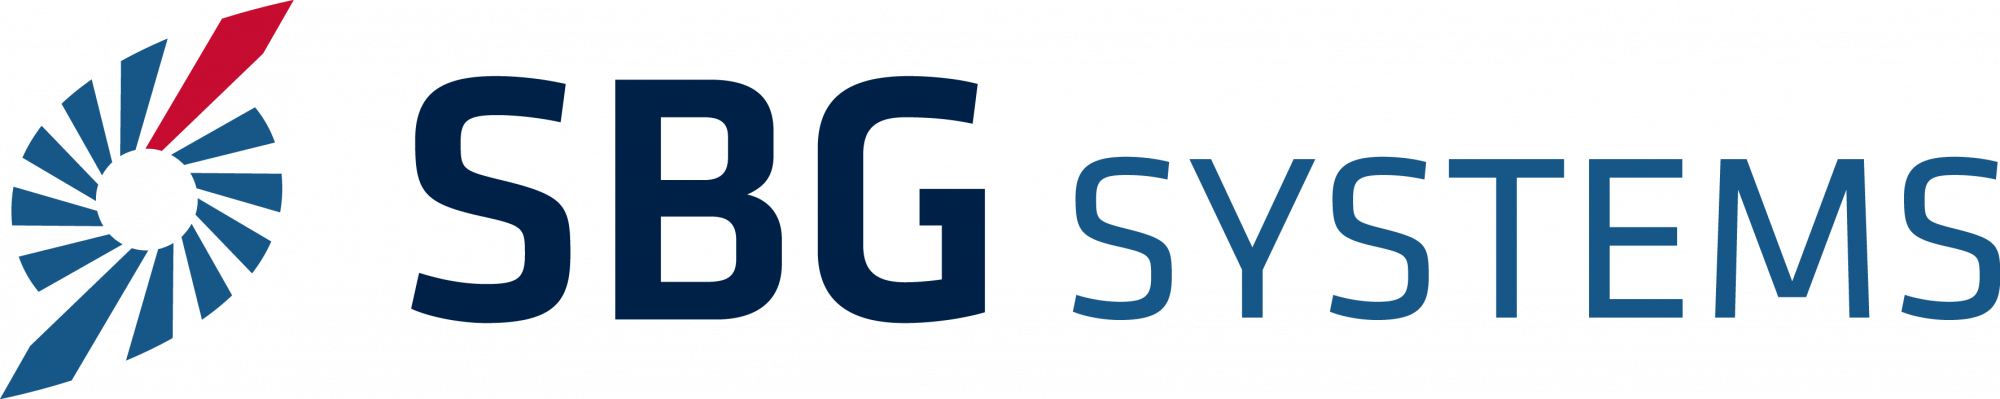 SBG_logo_RVB.png